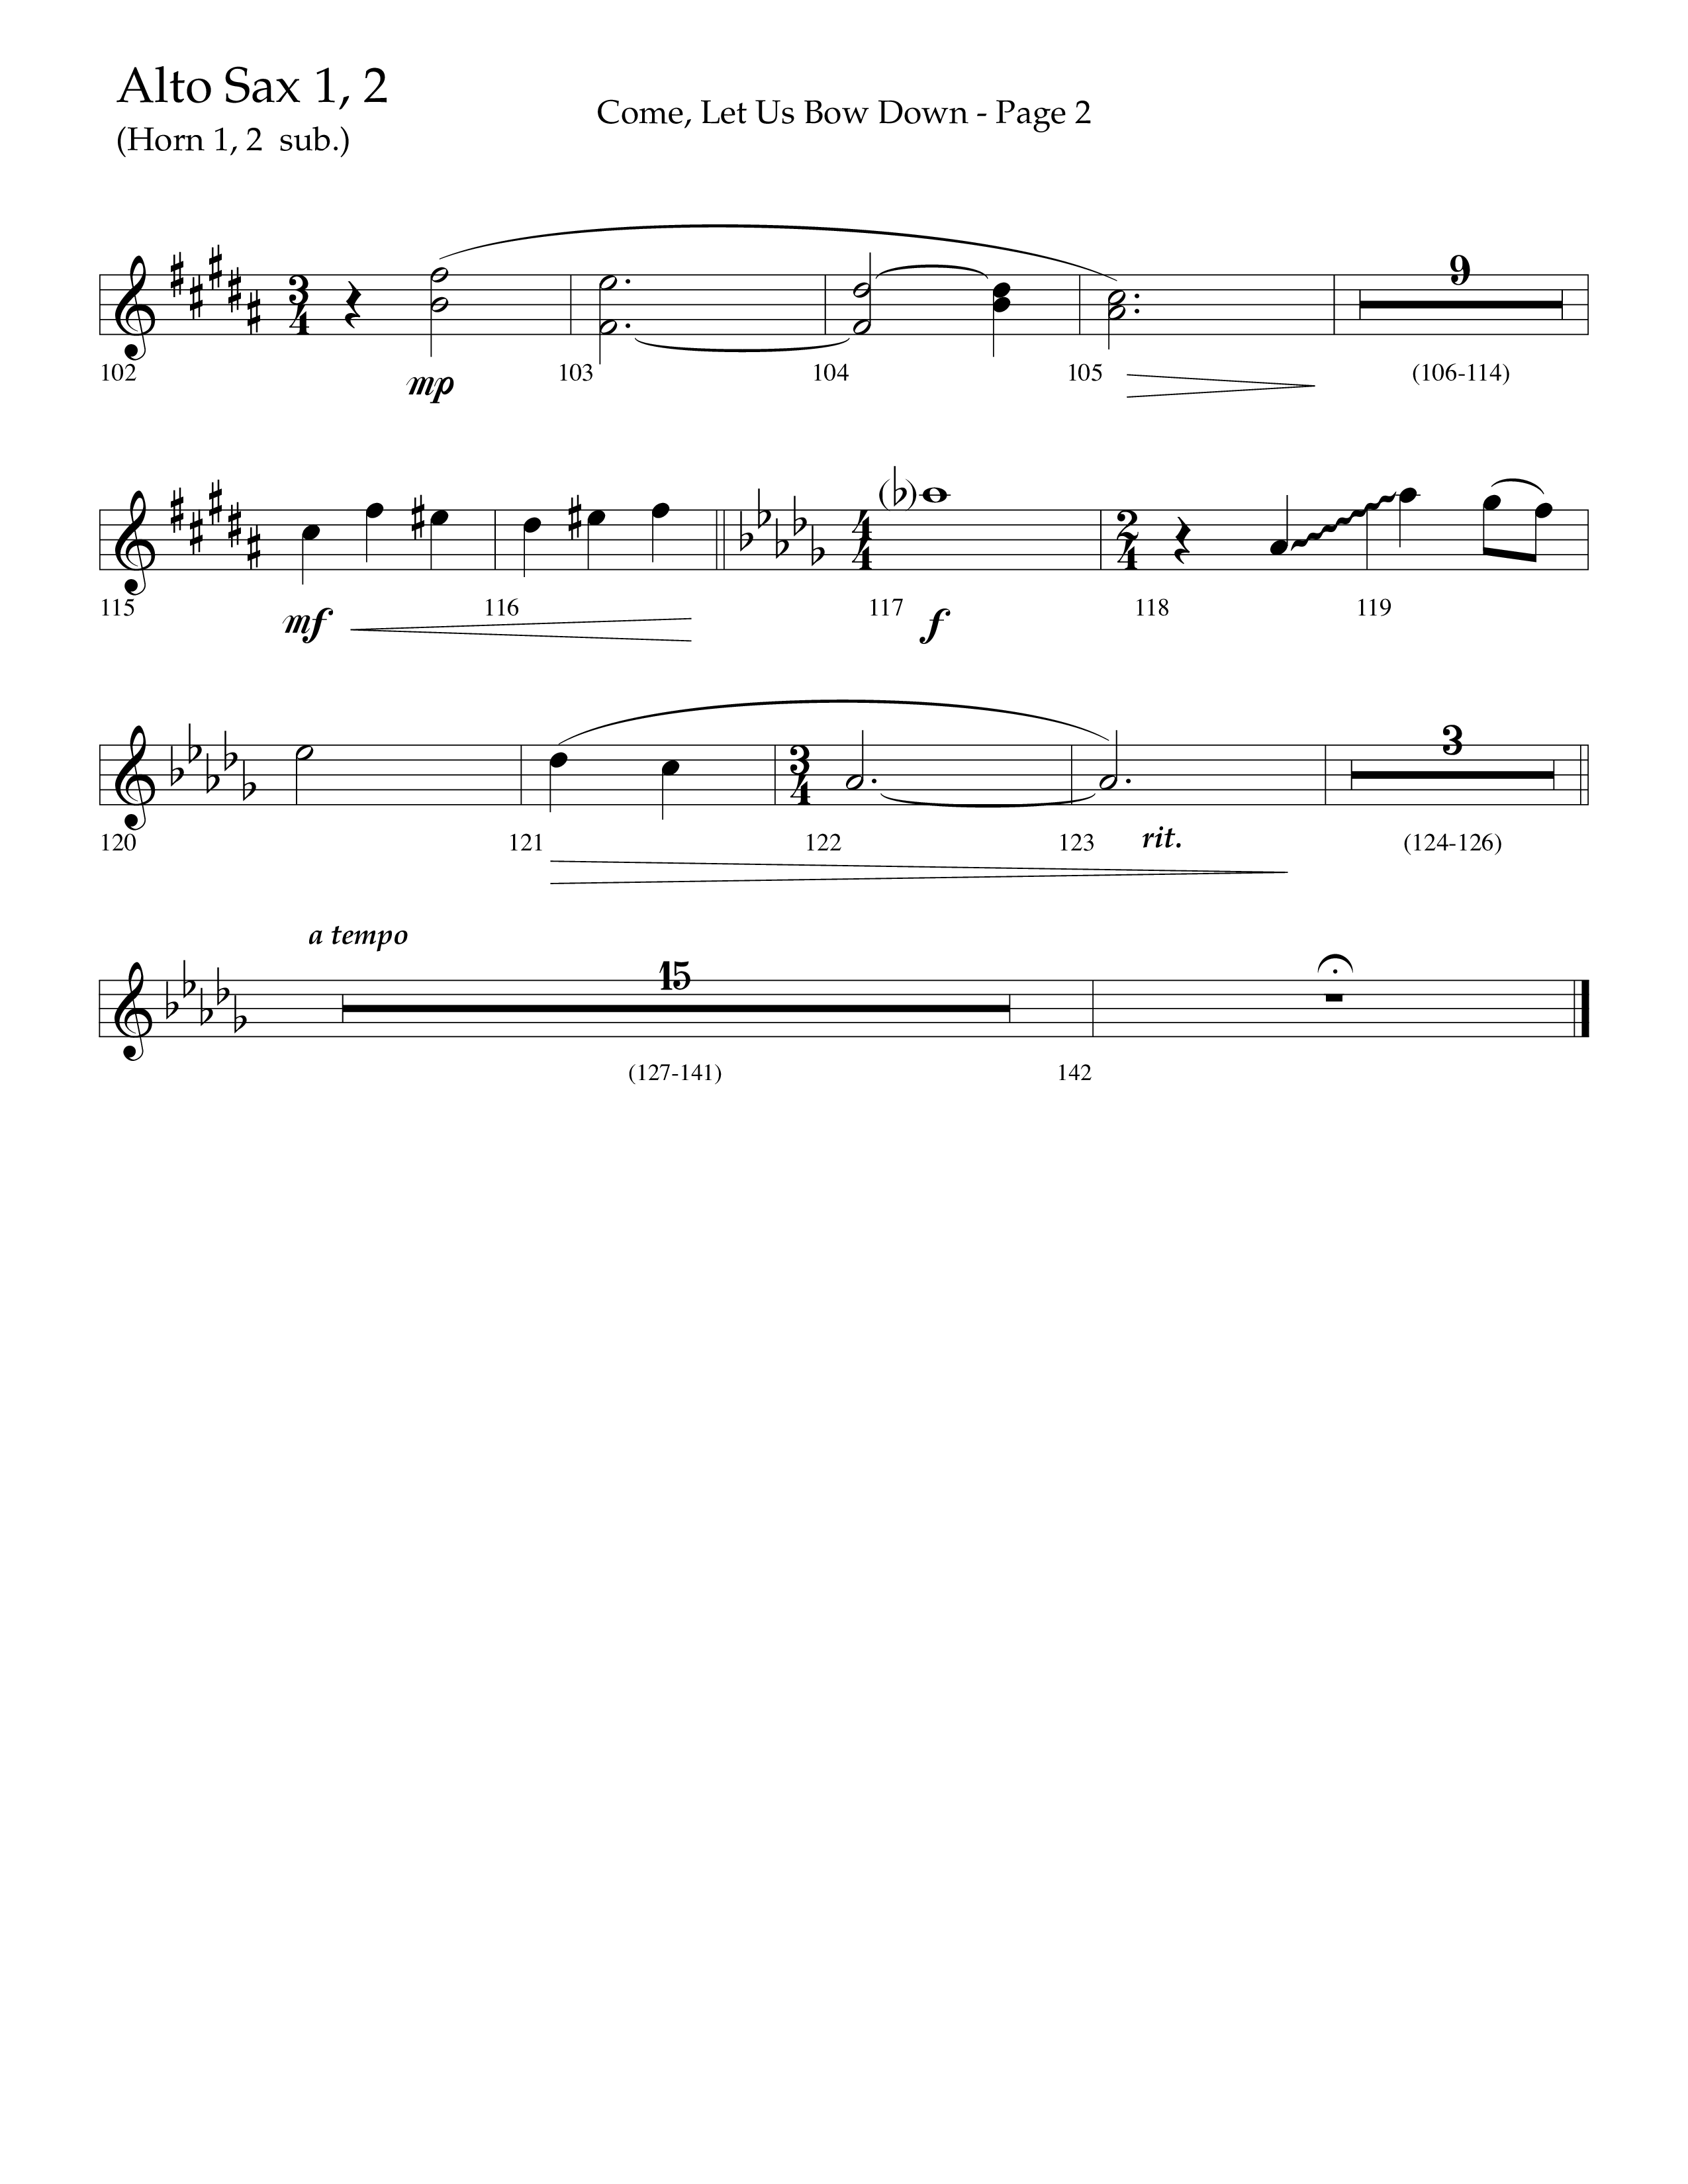 Come Let Us Bow Down (Choral Anthem SATB) Alto Sax 1/2 (Lifeway Choral / Arr. Cliff Duren)